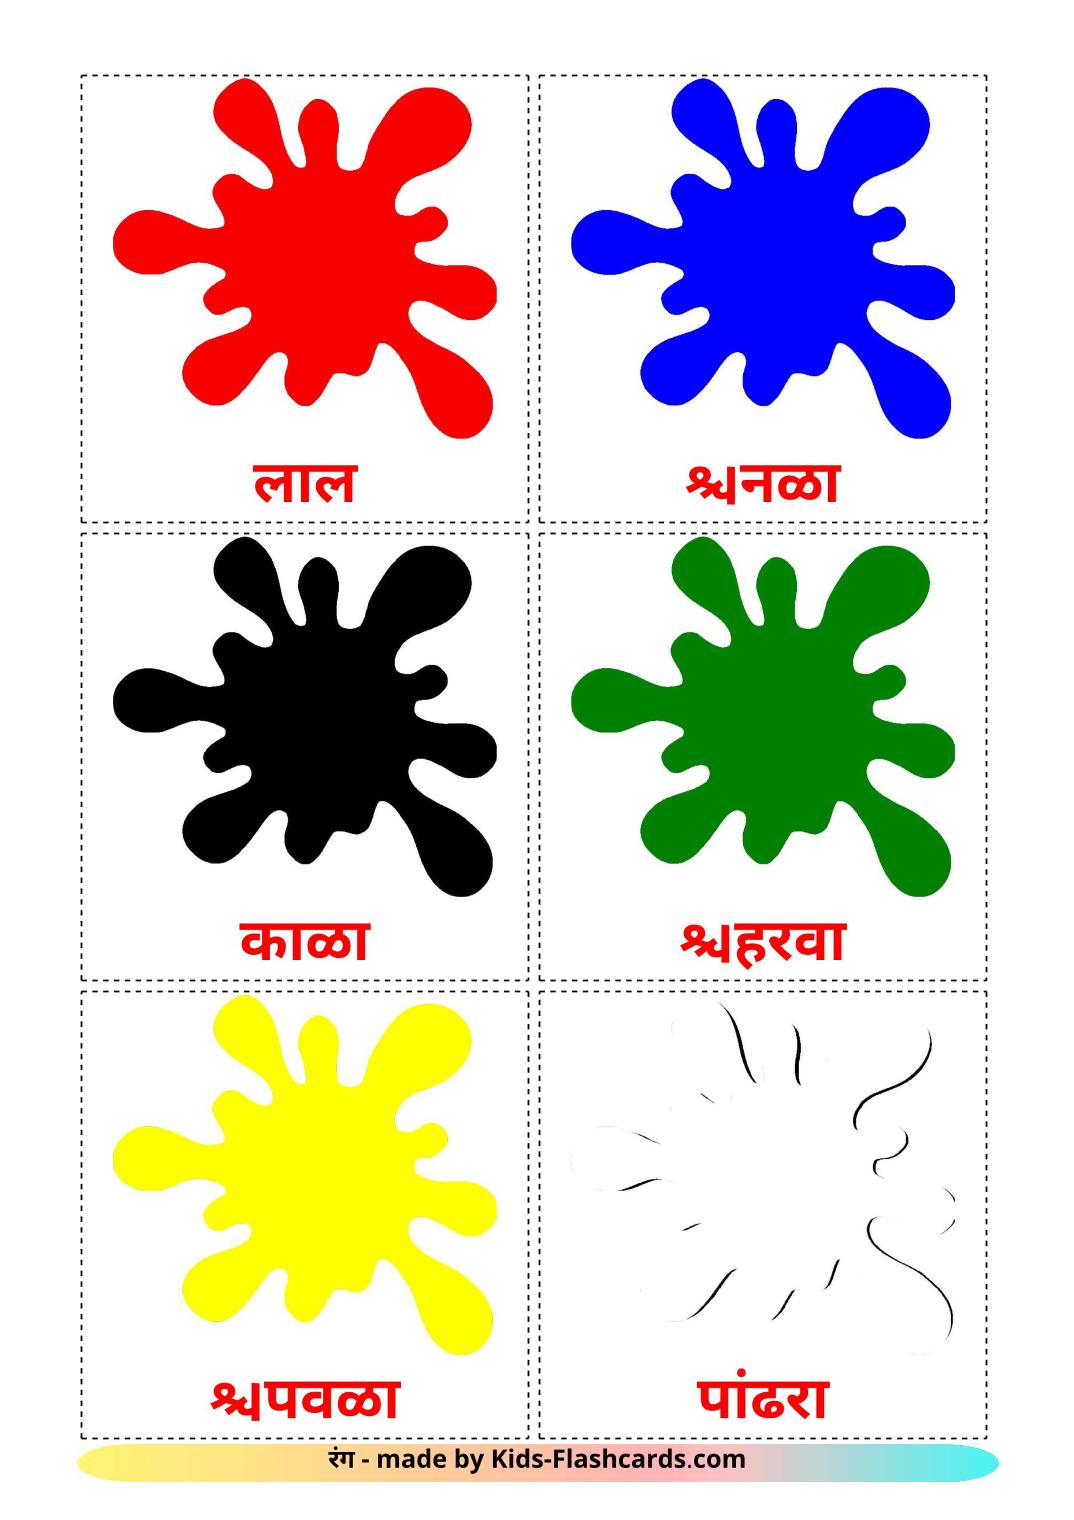 Base colors - 12 Free Printable marathi Flashcards 